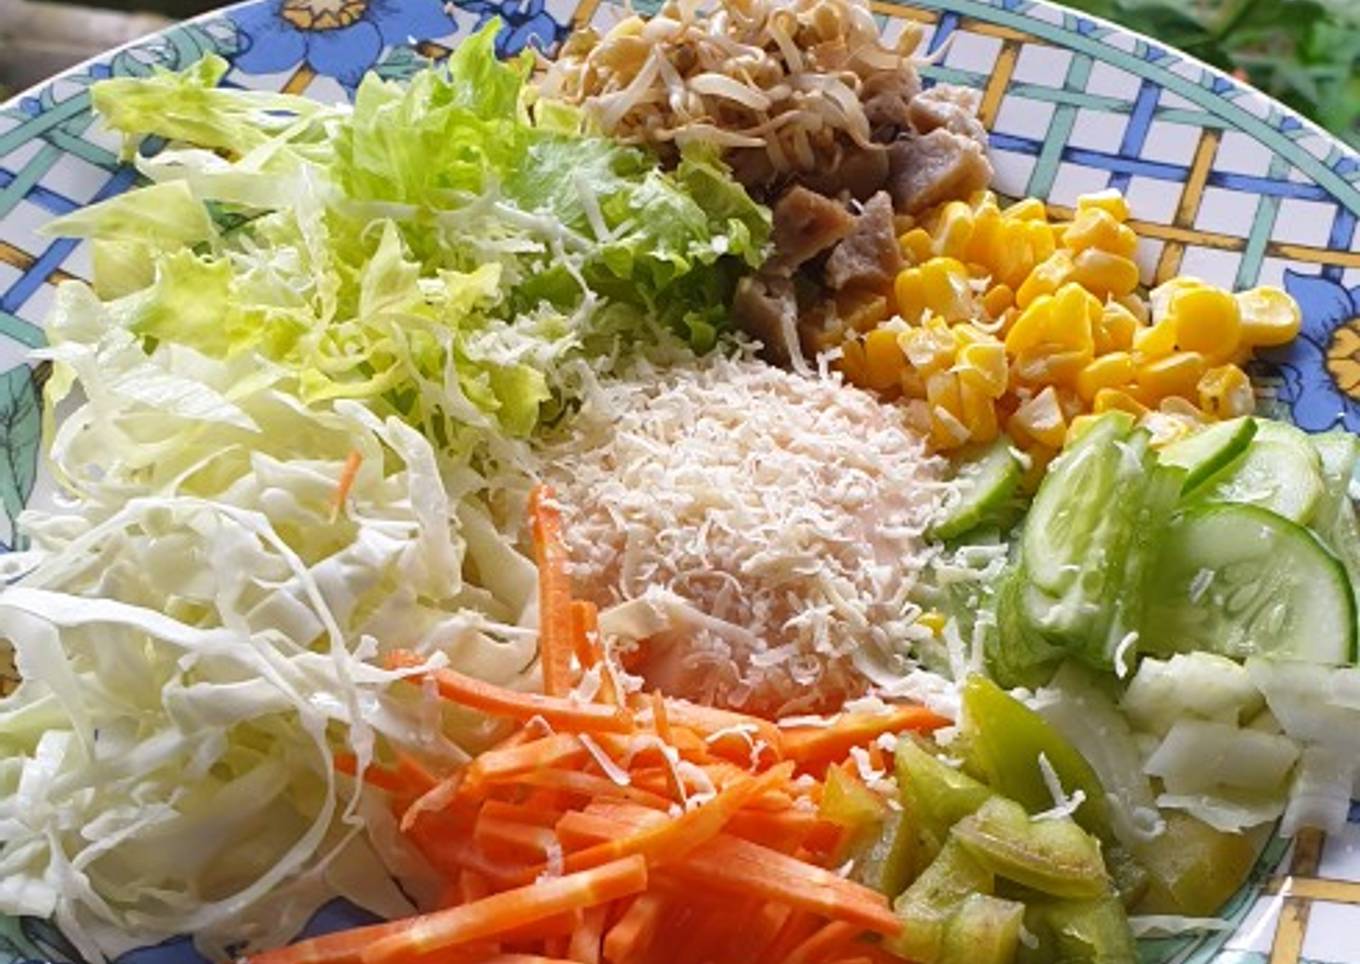 Salad sayur (vegetable salad)